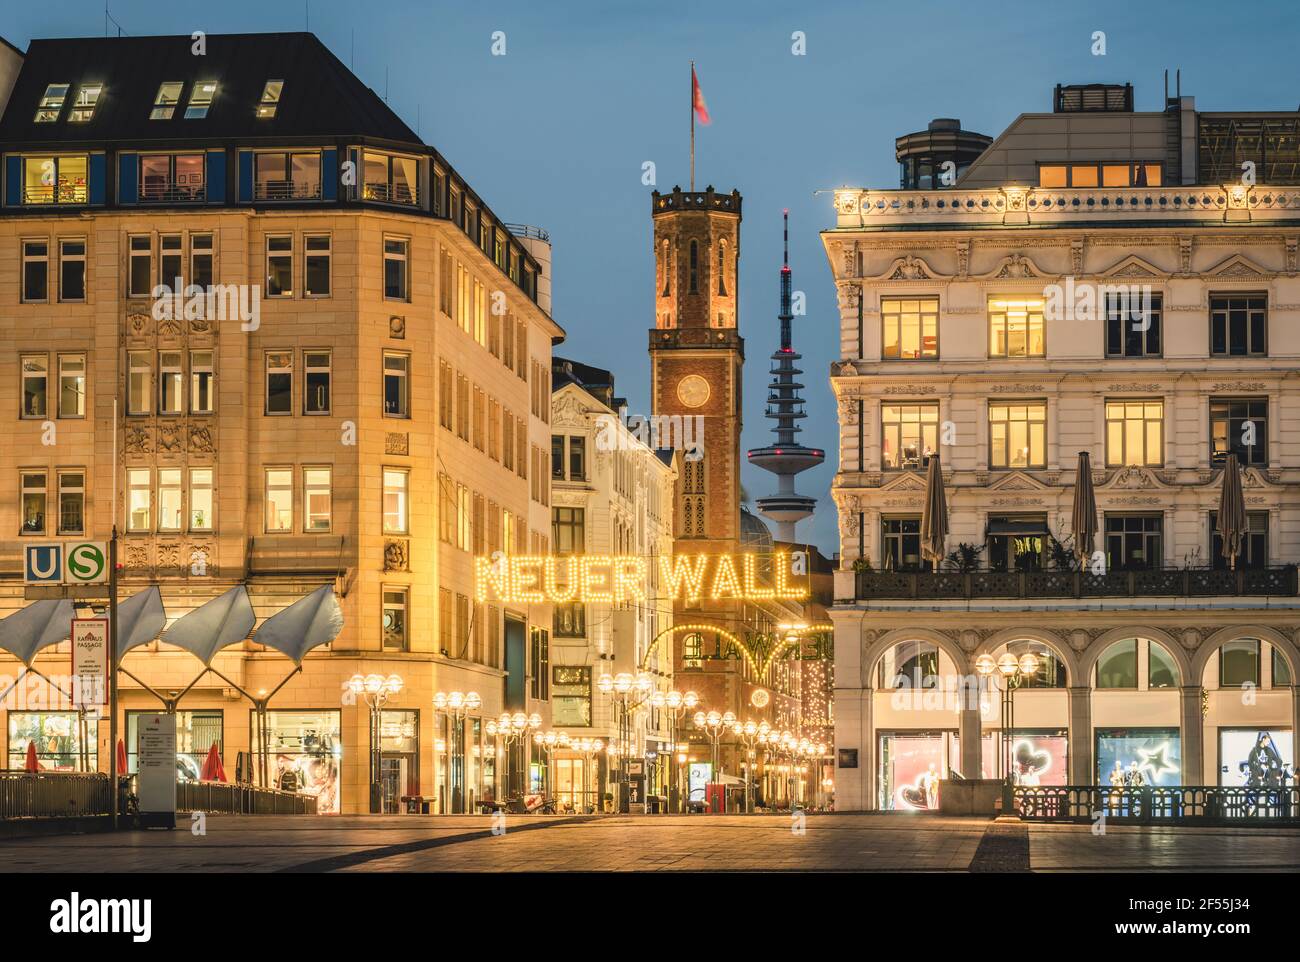 Germania, Amburgo, il centro della città decorato e illuminato al tempo di Natale Foto Stock